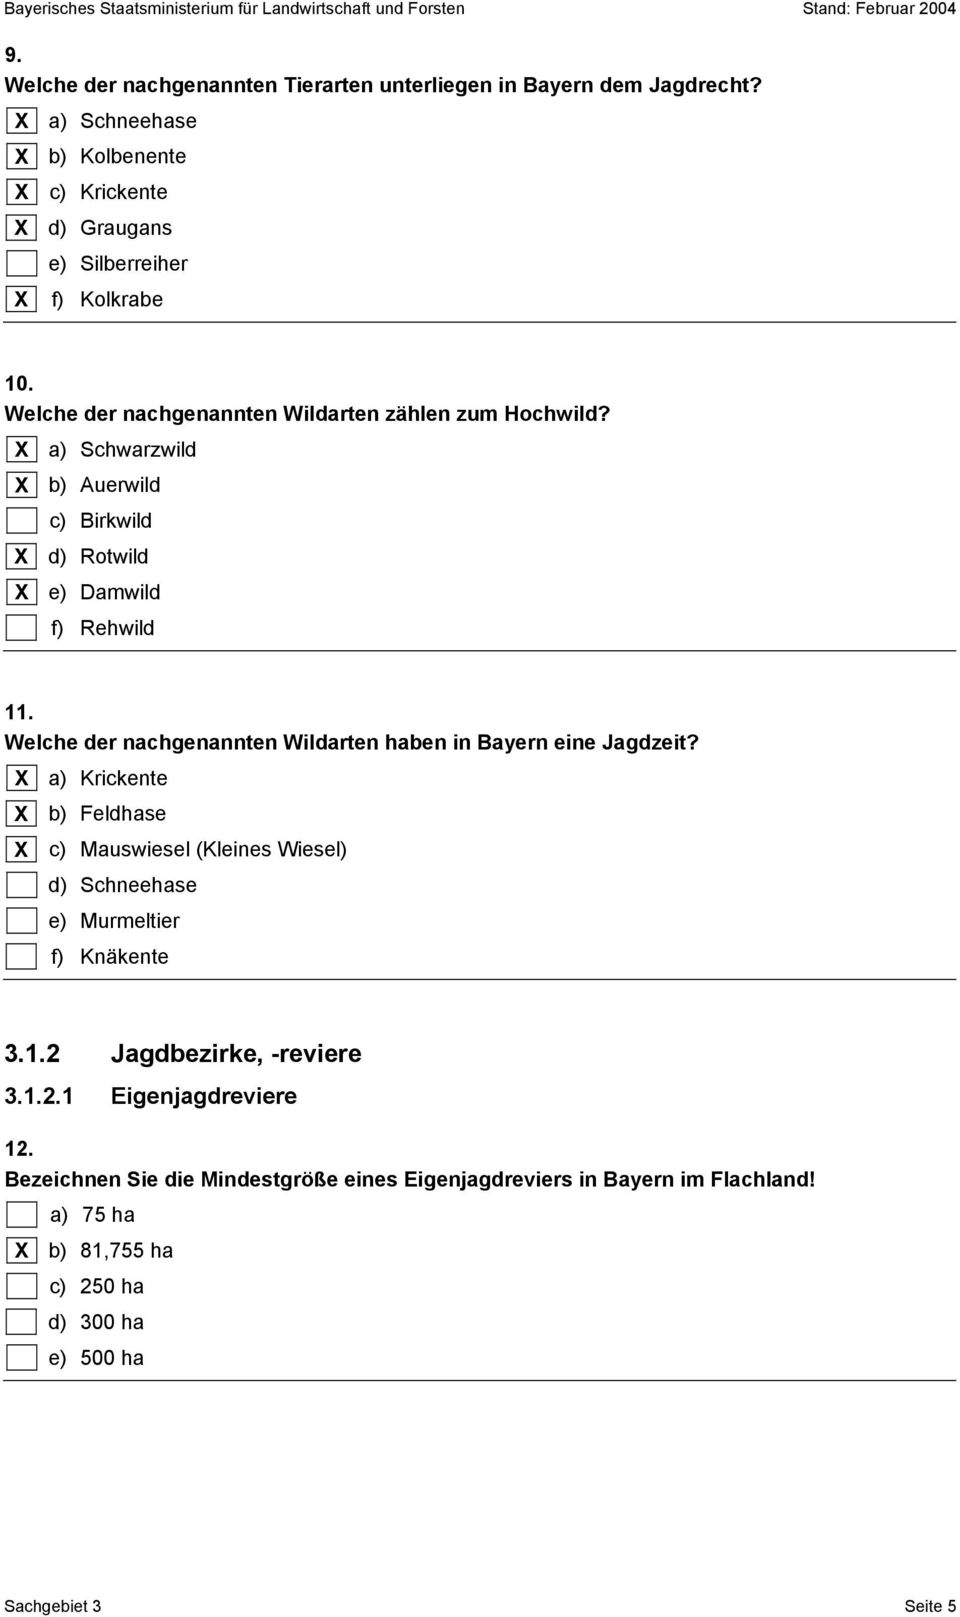 Welche der nachgenannten Wildarten haben in Bayern eine Jagdzeit? a) Krickente b) Feldhase c) Mauswiesel (Kleines Wiesel) d) Schneehase e) Murmeltier f) Knäkente 3.1.